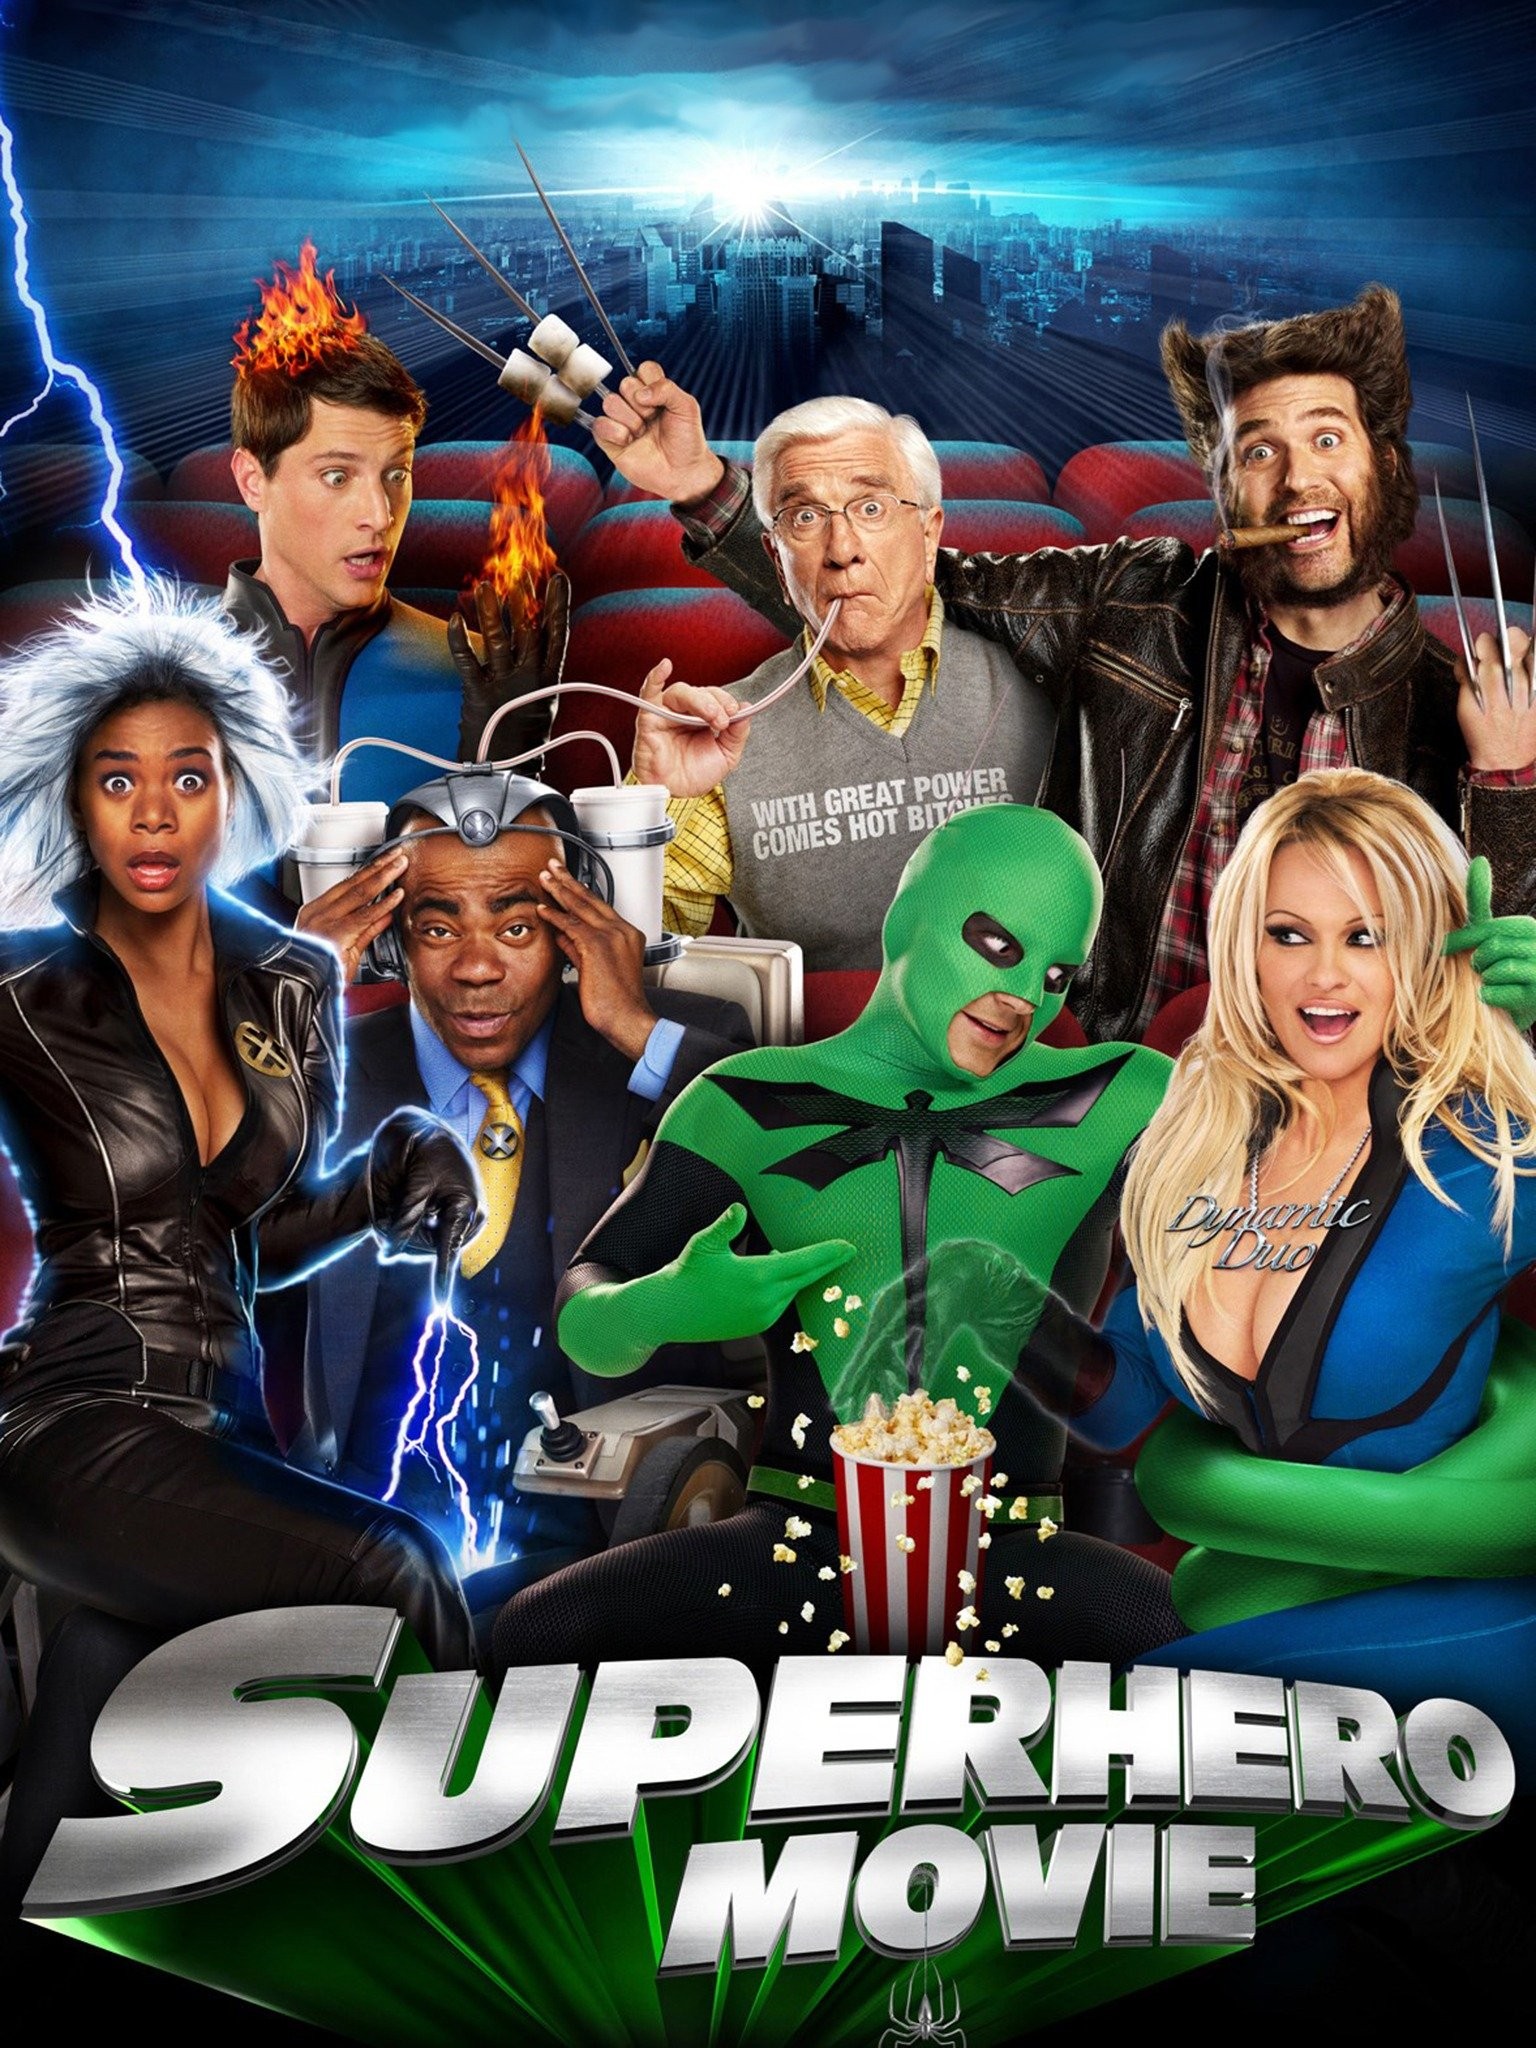 Superhero Movie (2008) - IMDb